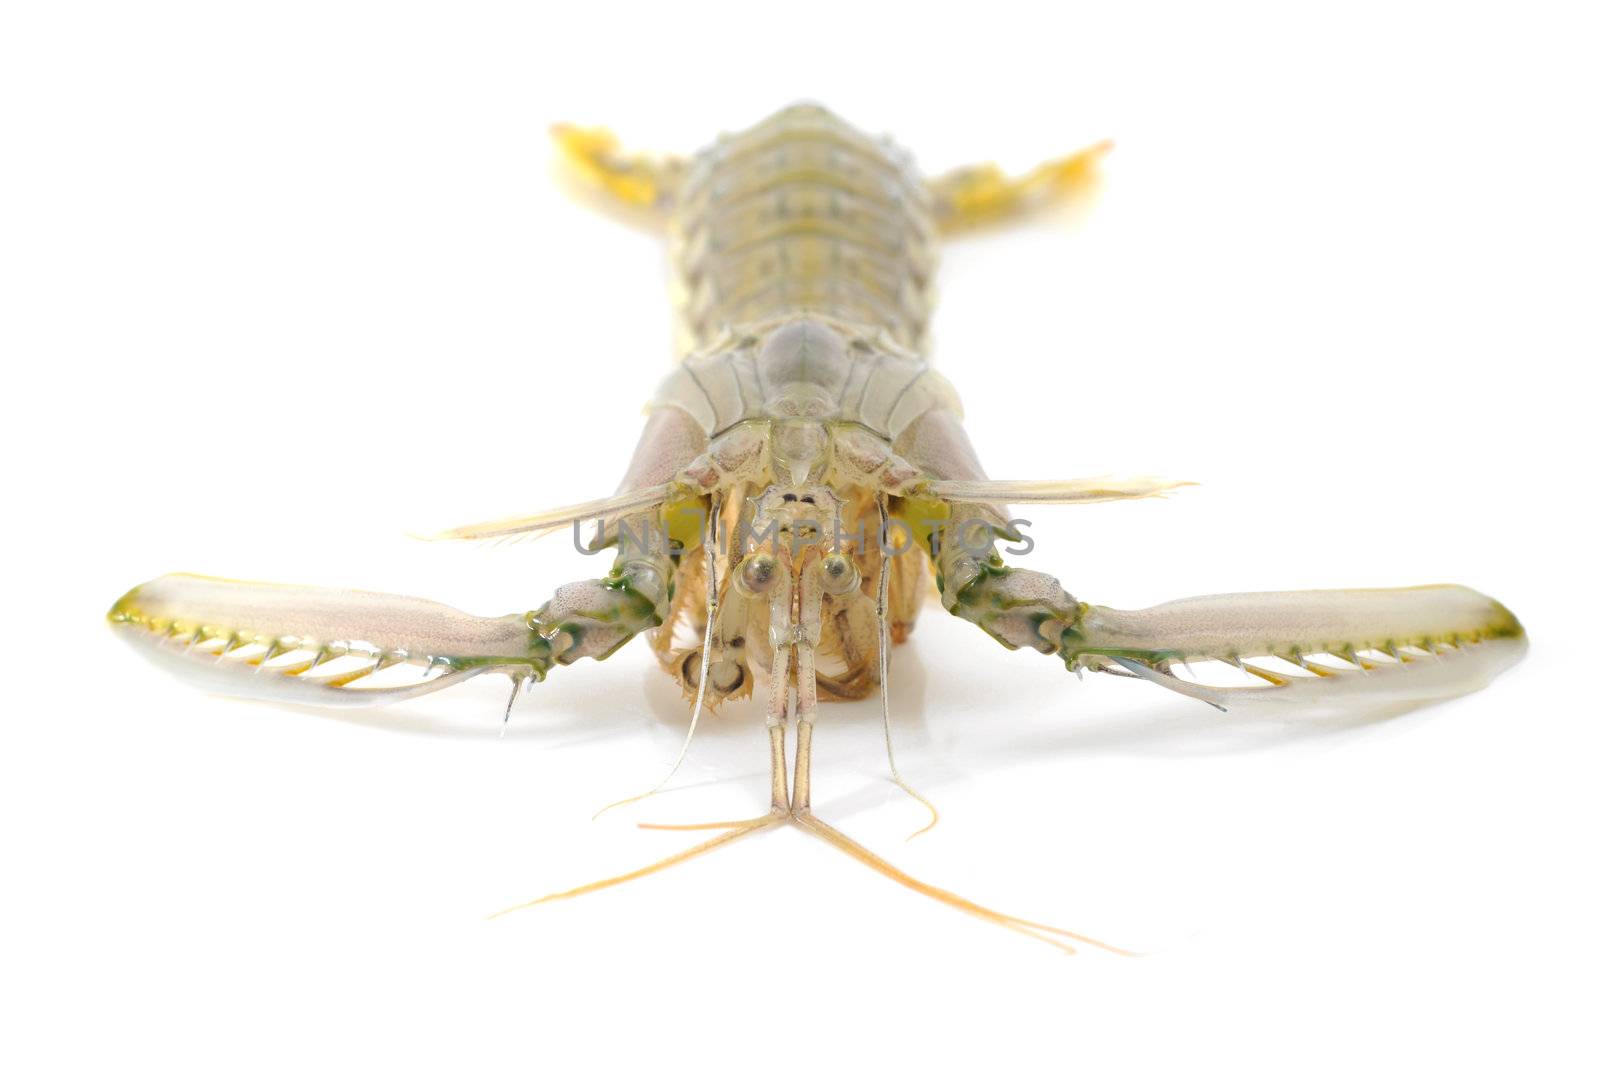 Mantis shrimp by antpkr